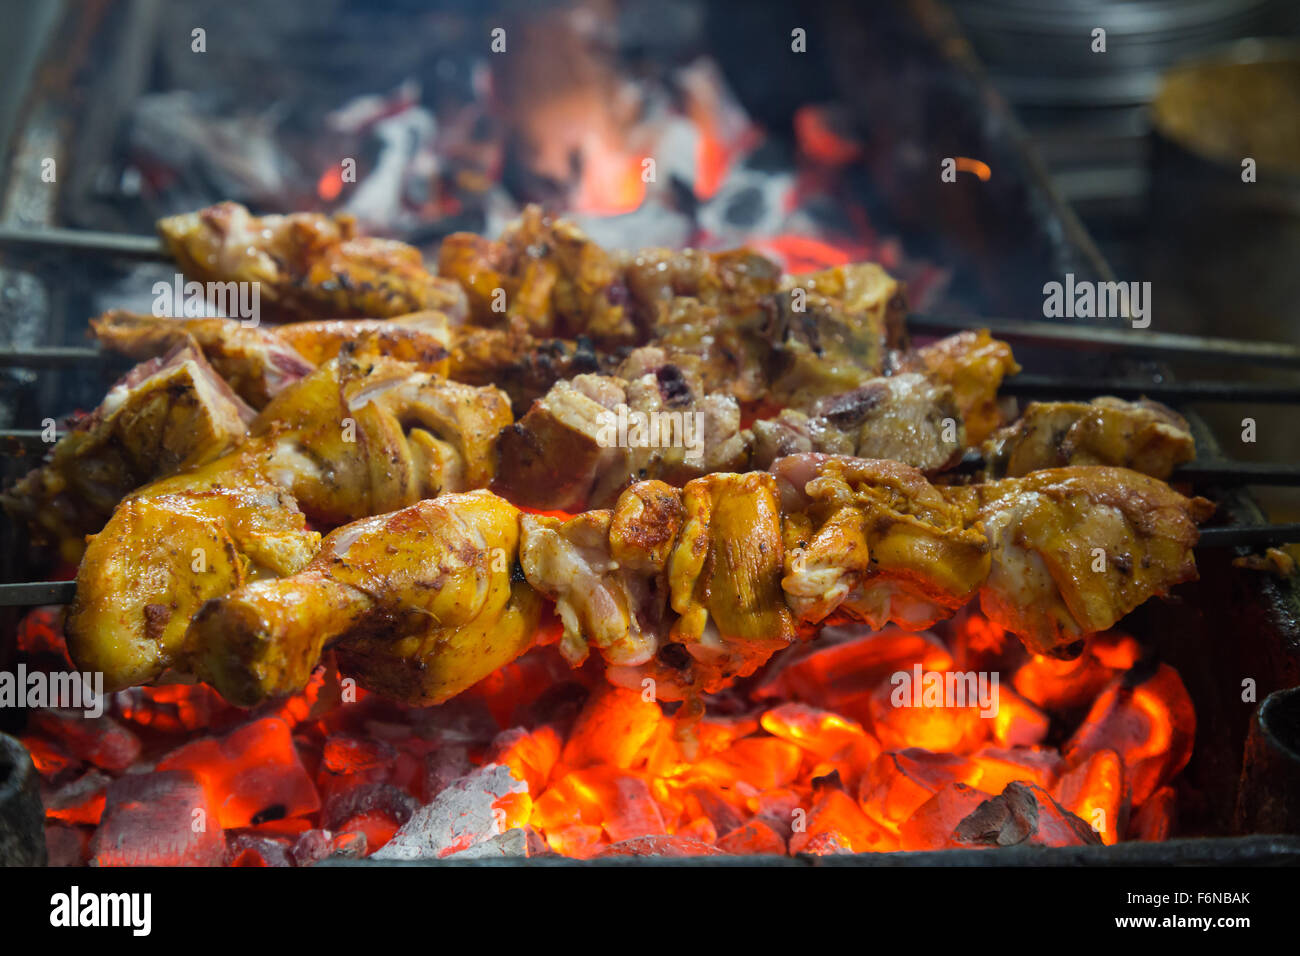 Gegrillte Hähnchenschenkel auf dem Holzkohlegrill Stockfotografie - Alamy